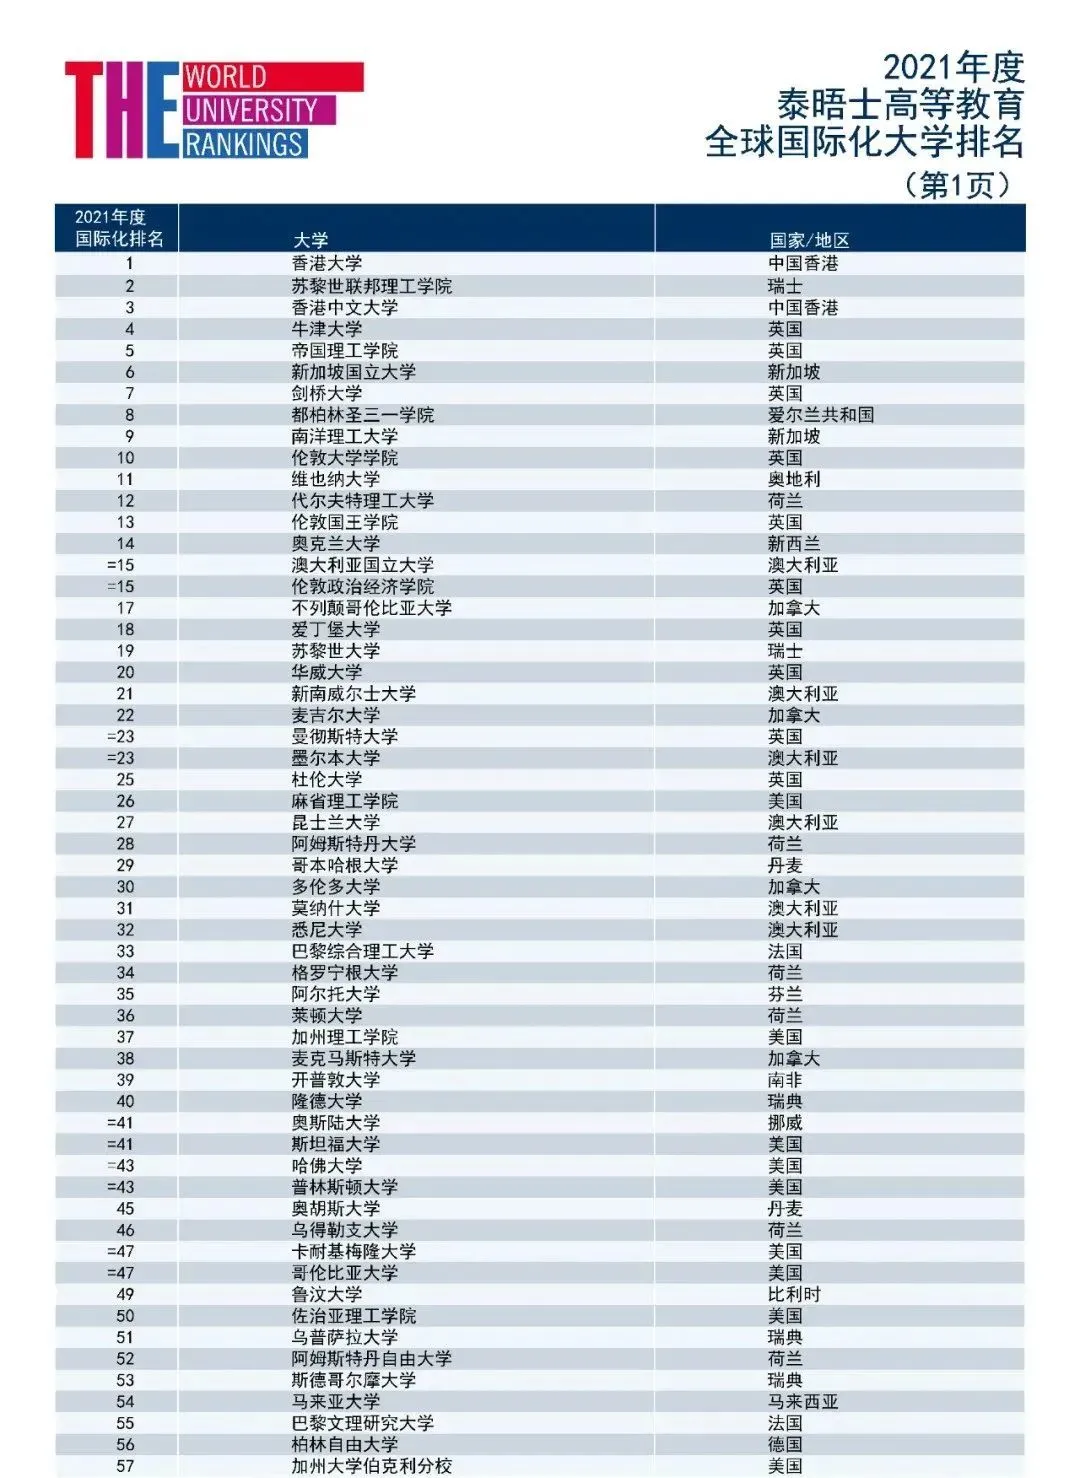 2021世界大学排名: 牛剑不敌港中文, 这所大学超越斯坦福夺魁!